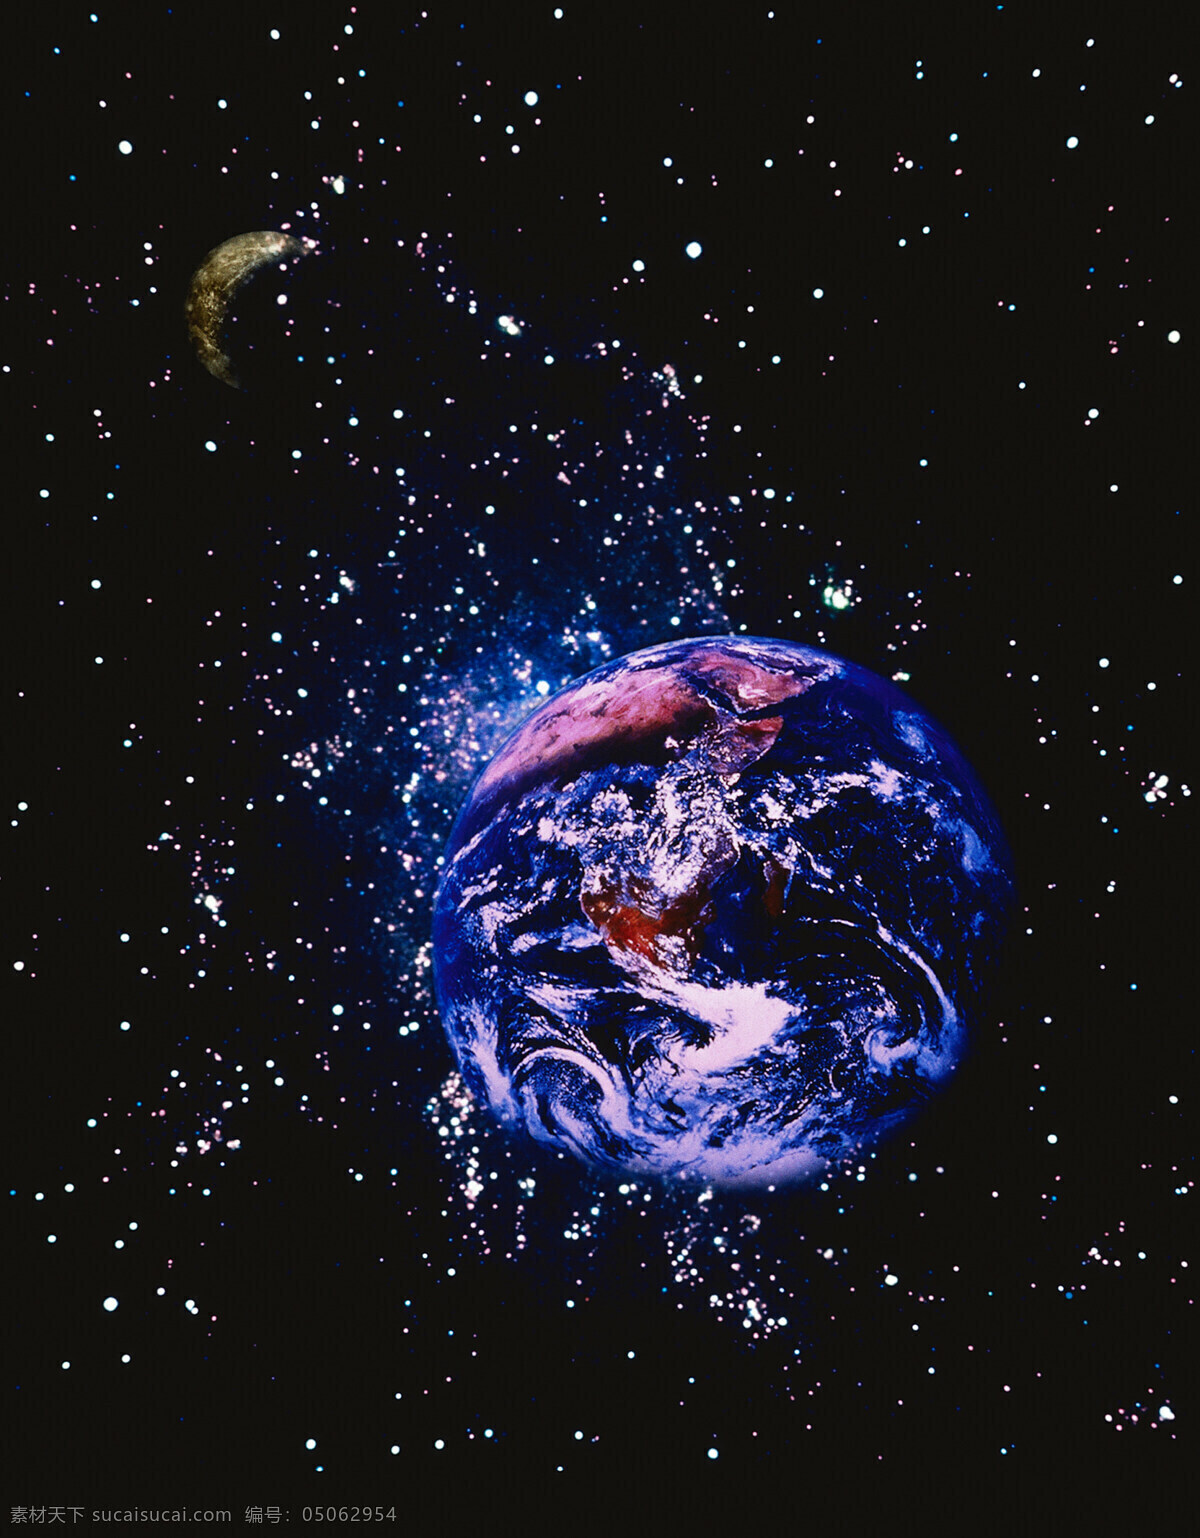 星球免费下载 地球 广告 大 辞典 恒星 球体 神秘 太阳系 探索 星球 银河系 宇宙 现代科技